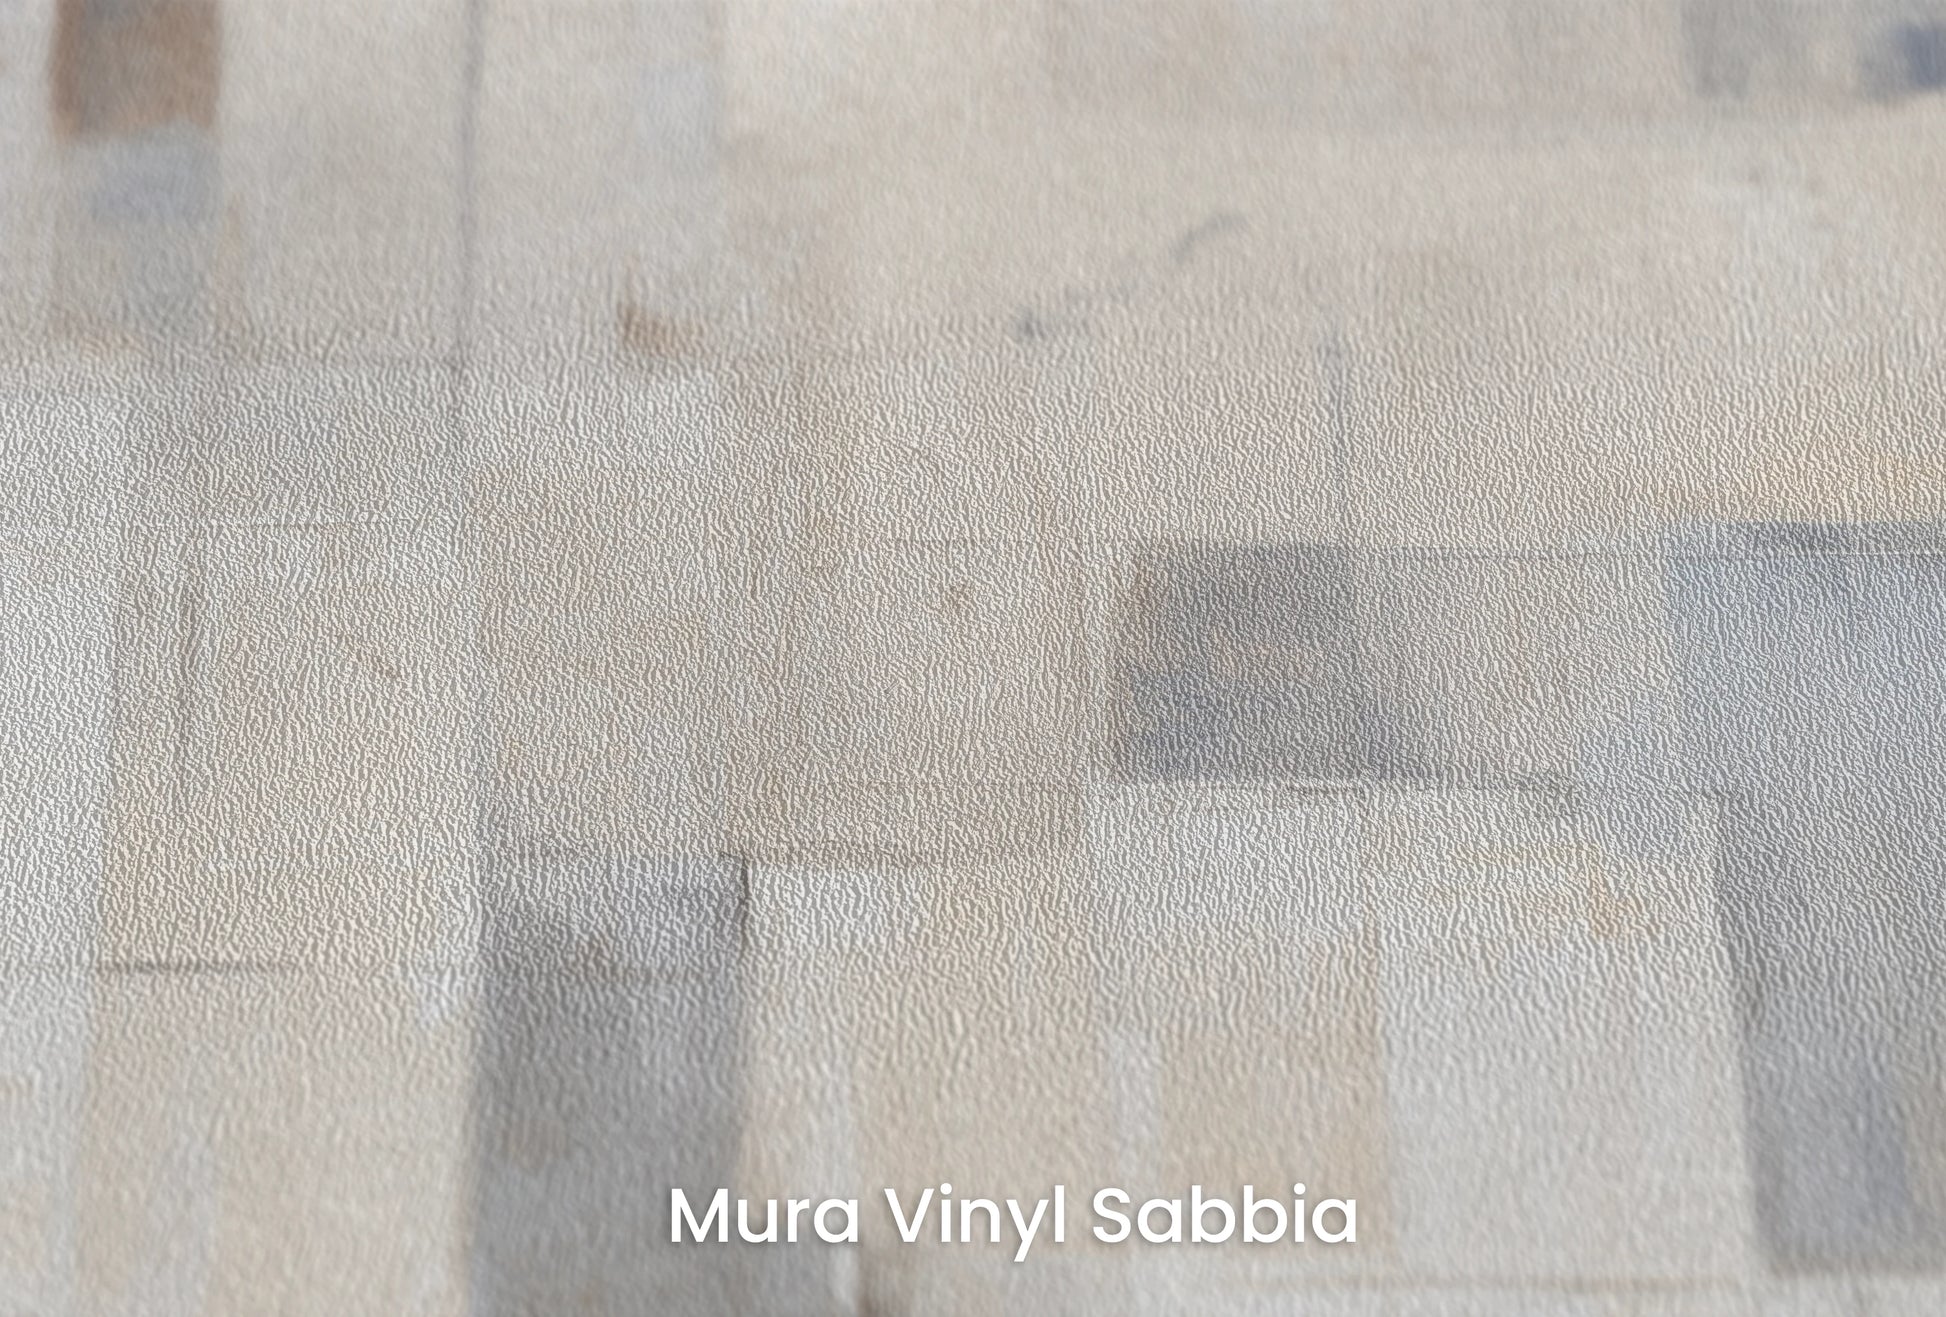 Zbliżenie na artystyczną fototapetę o nazwie Abstract Calm na podłożu Mura Vinyl Sabbia struktura grubego ziarna piasku.